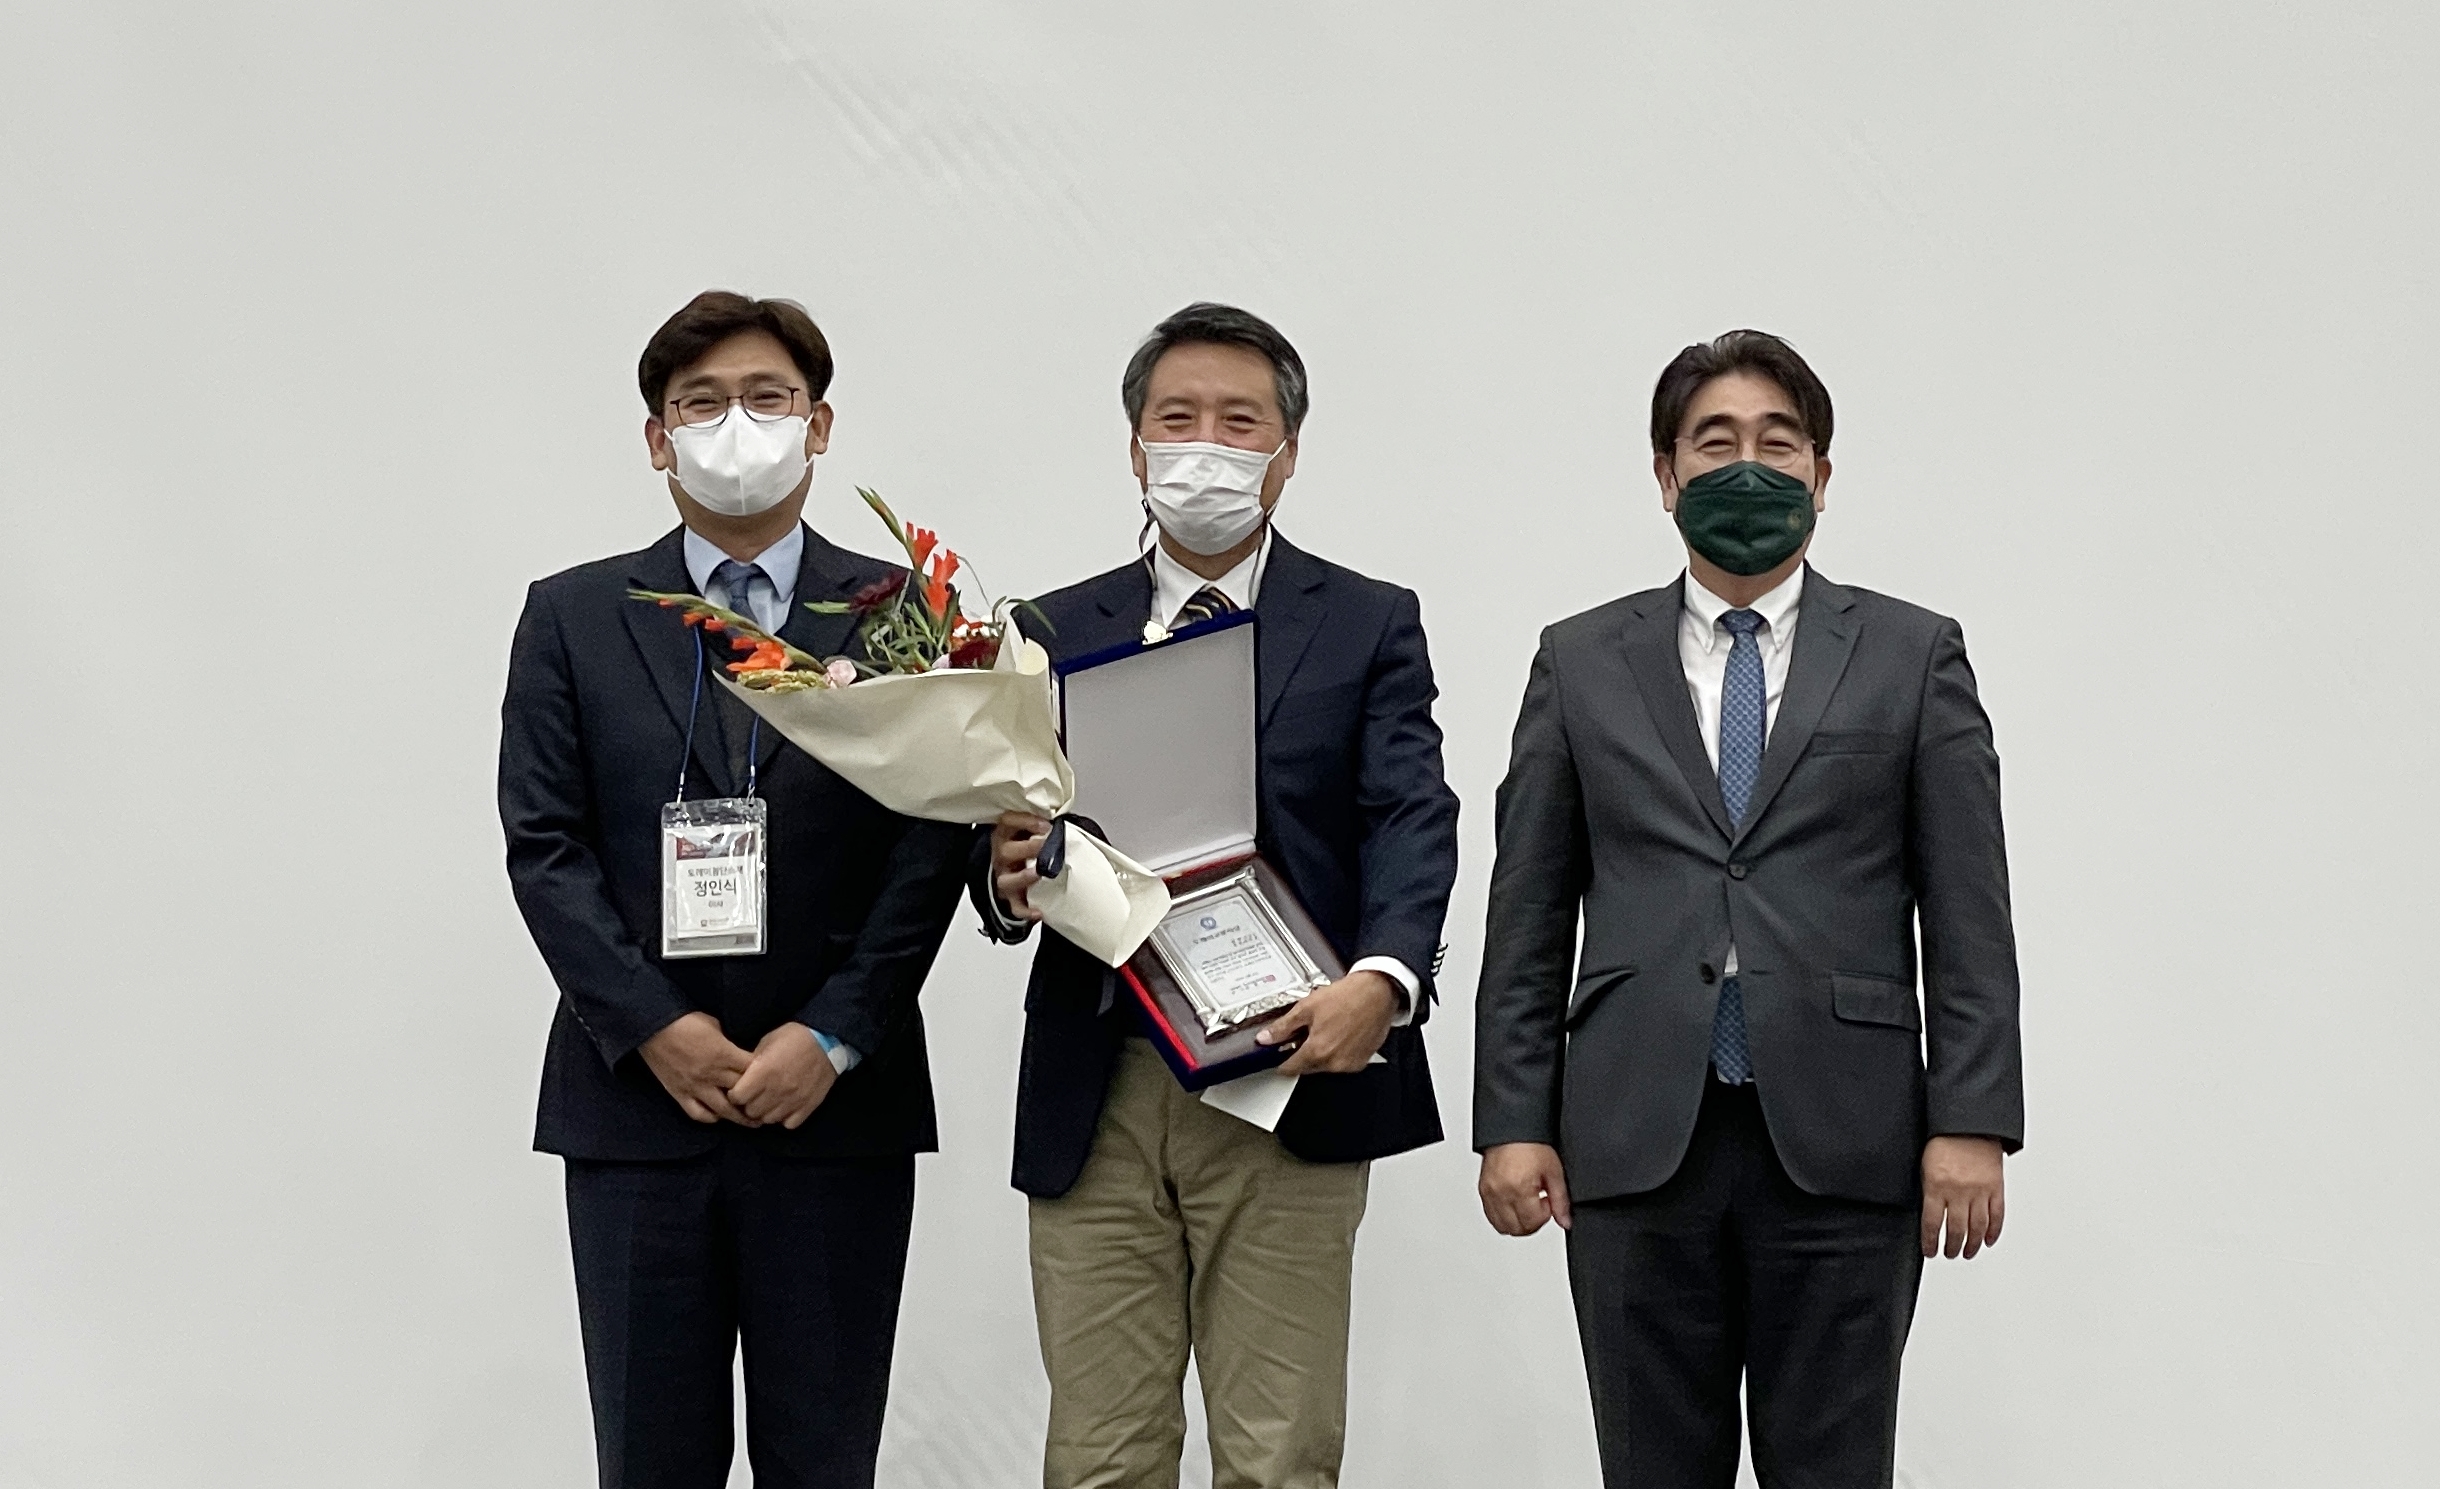 Professor Lee Taek-seung won the 2021 Toray Polymer Award